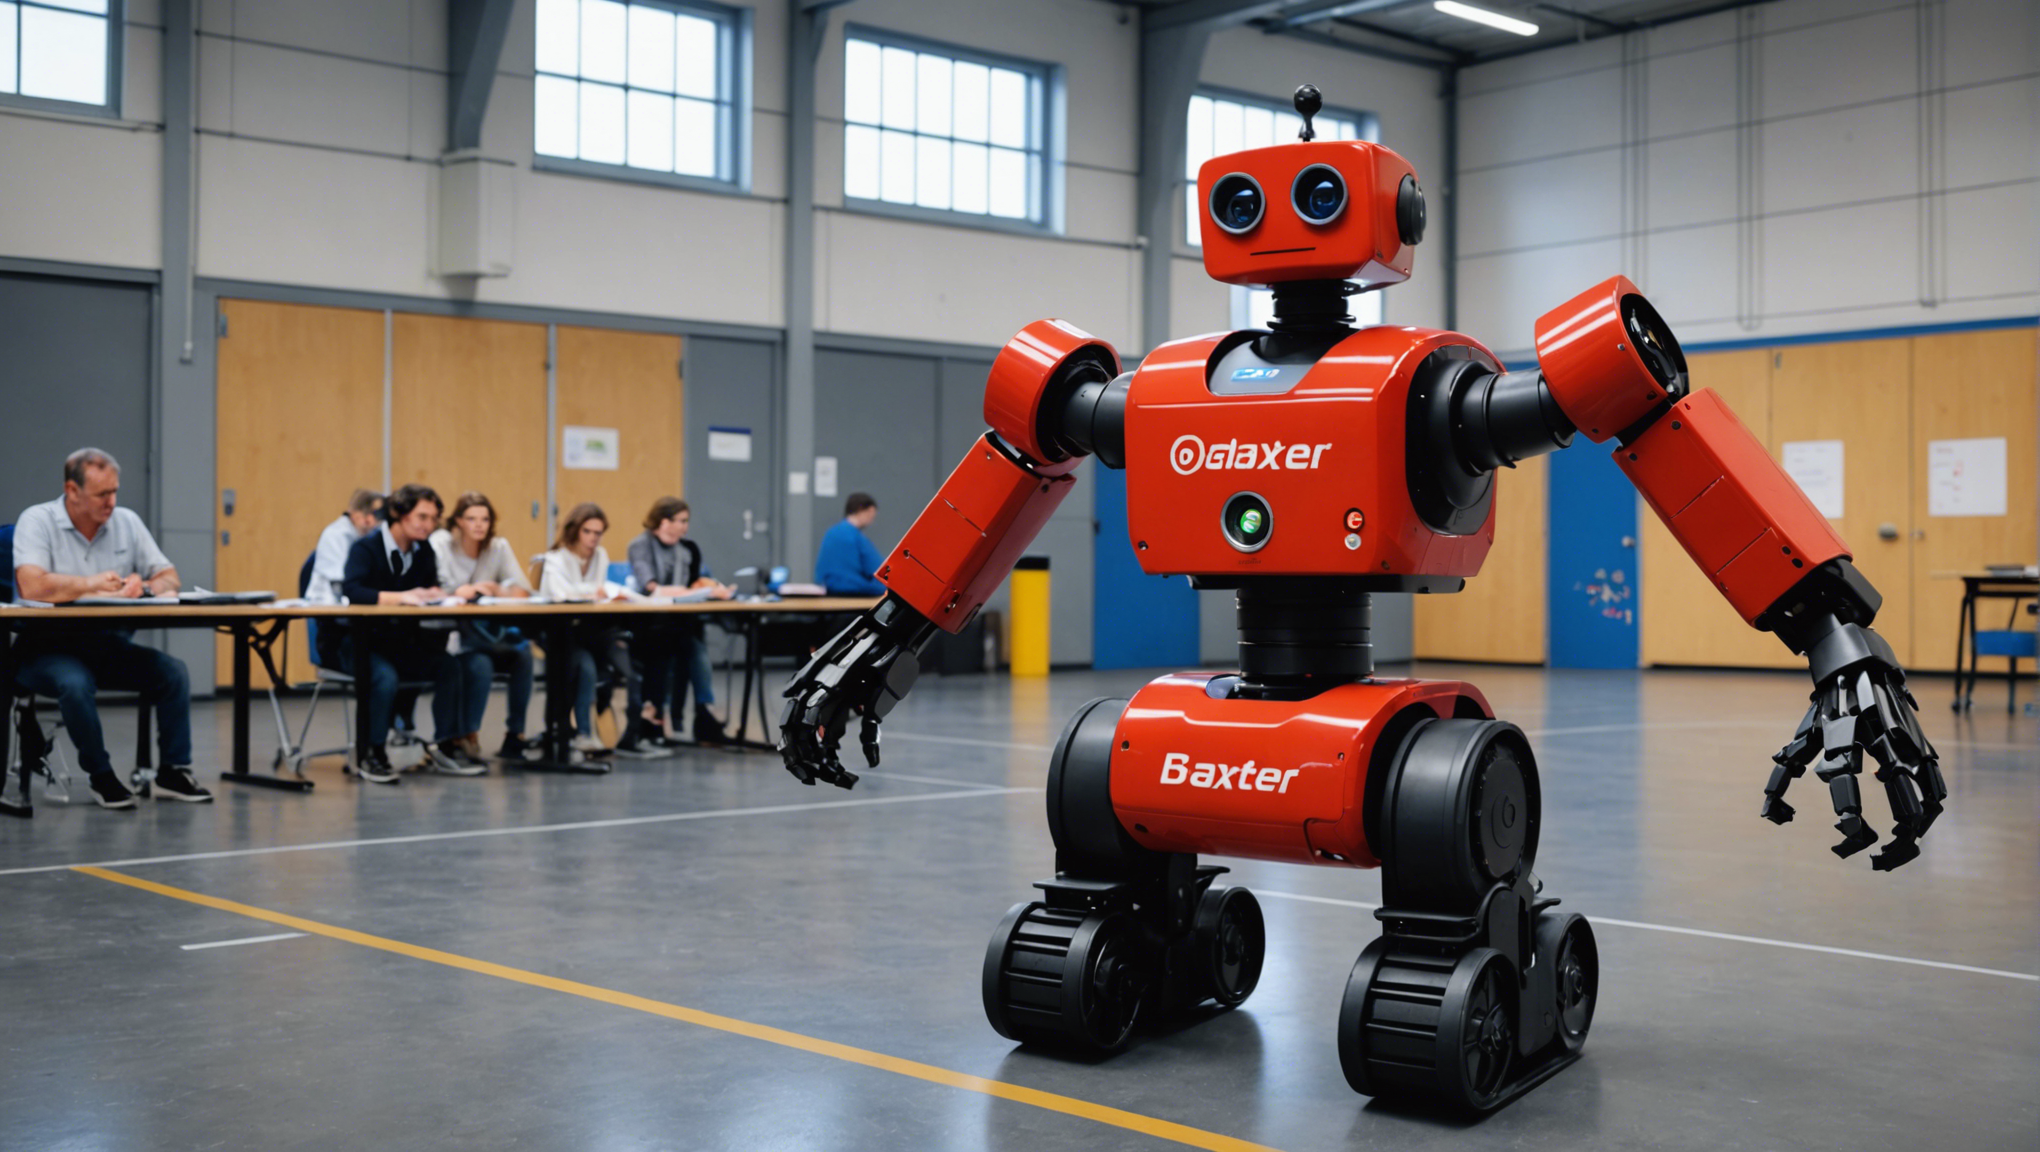 découvrez l'arrivée du robot baxter à l'ecole centrale de nantes en france, une évolution technologique au service de l'enseignement supérieur et de la recherche.